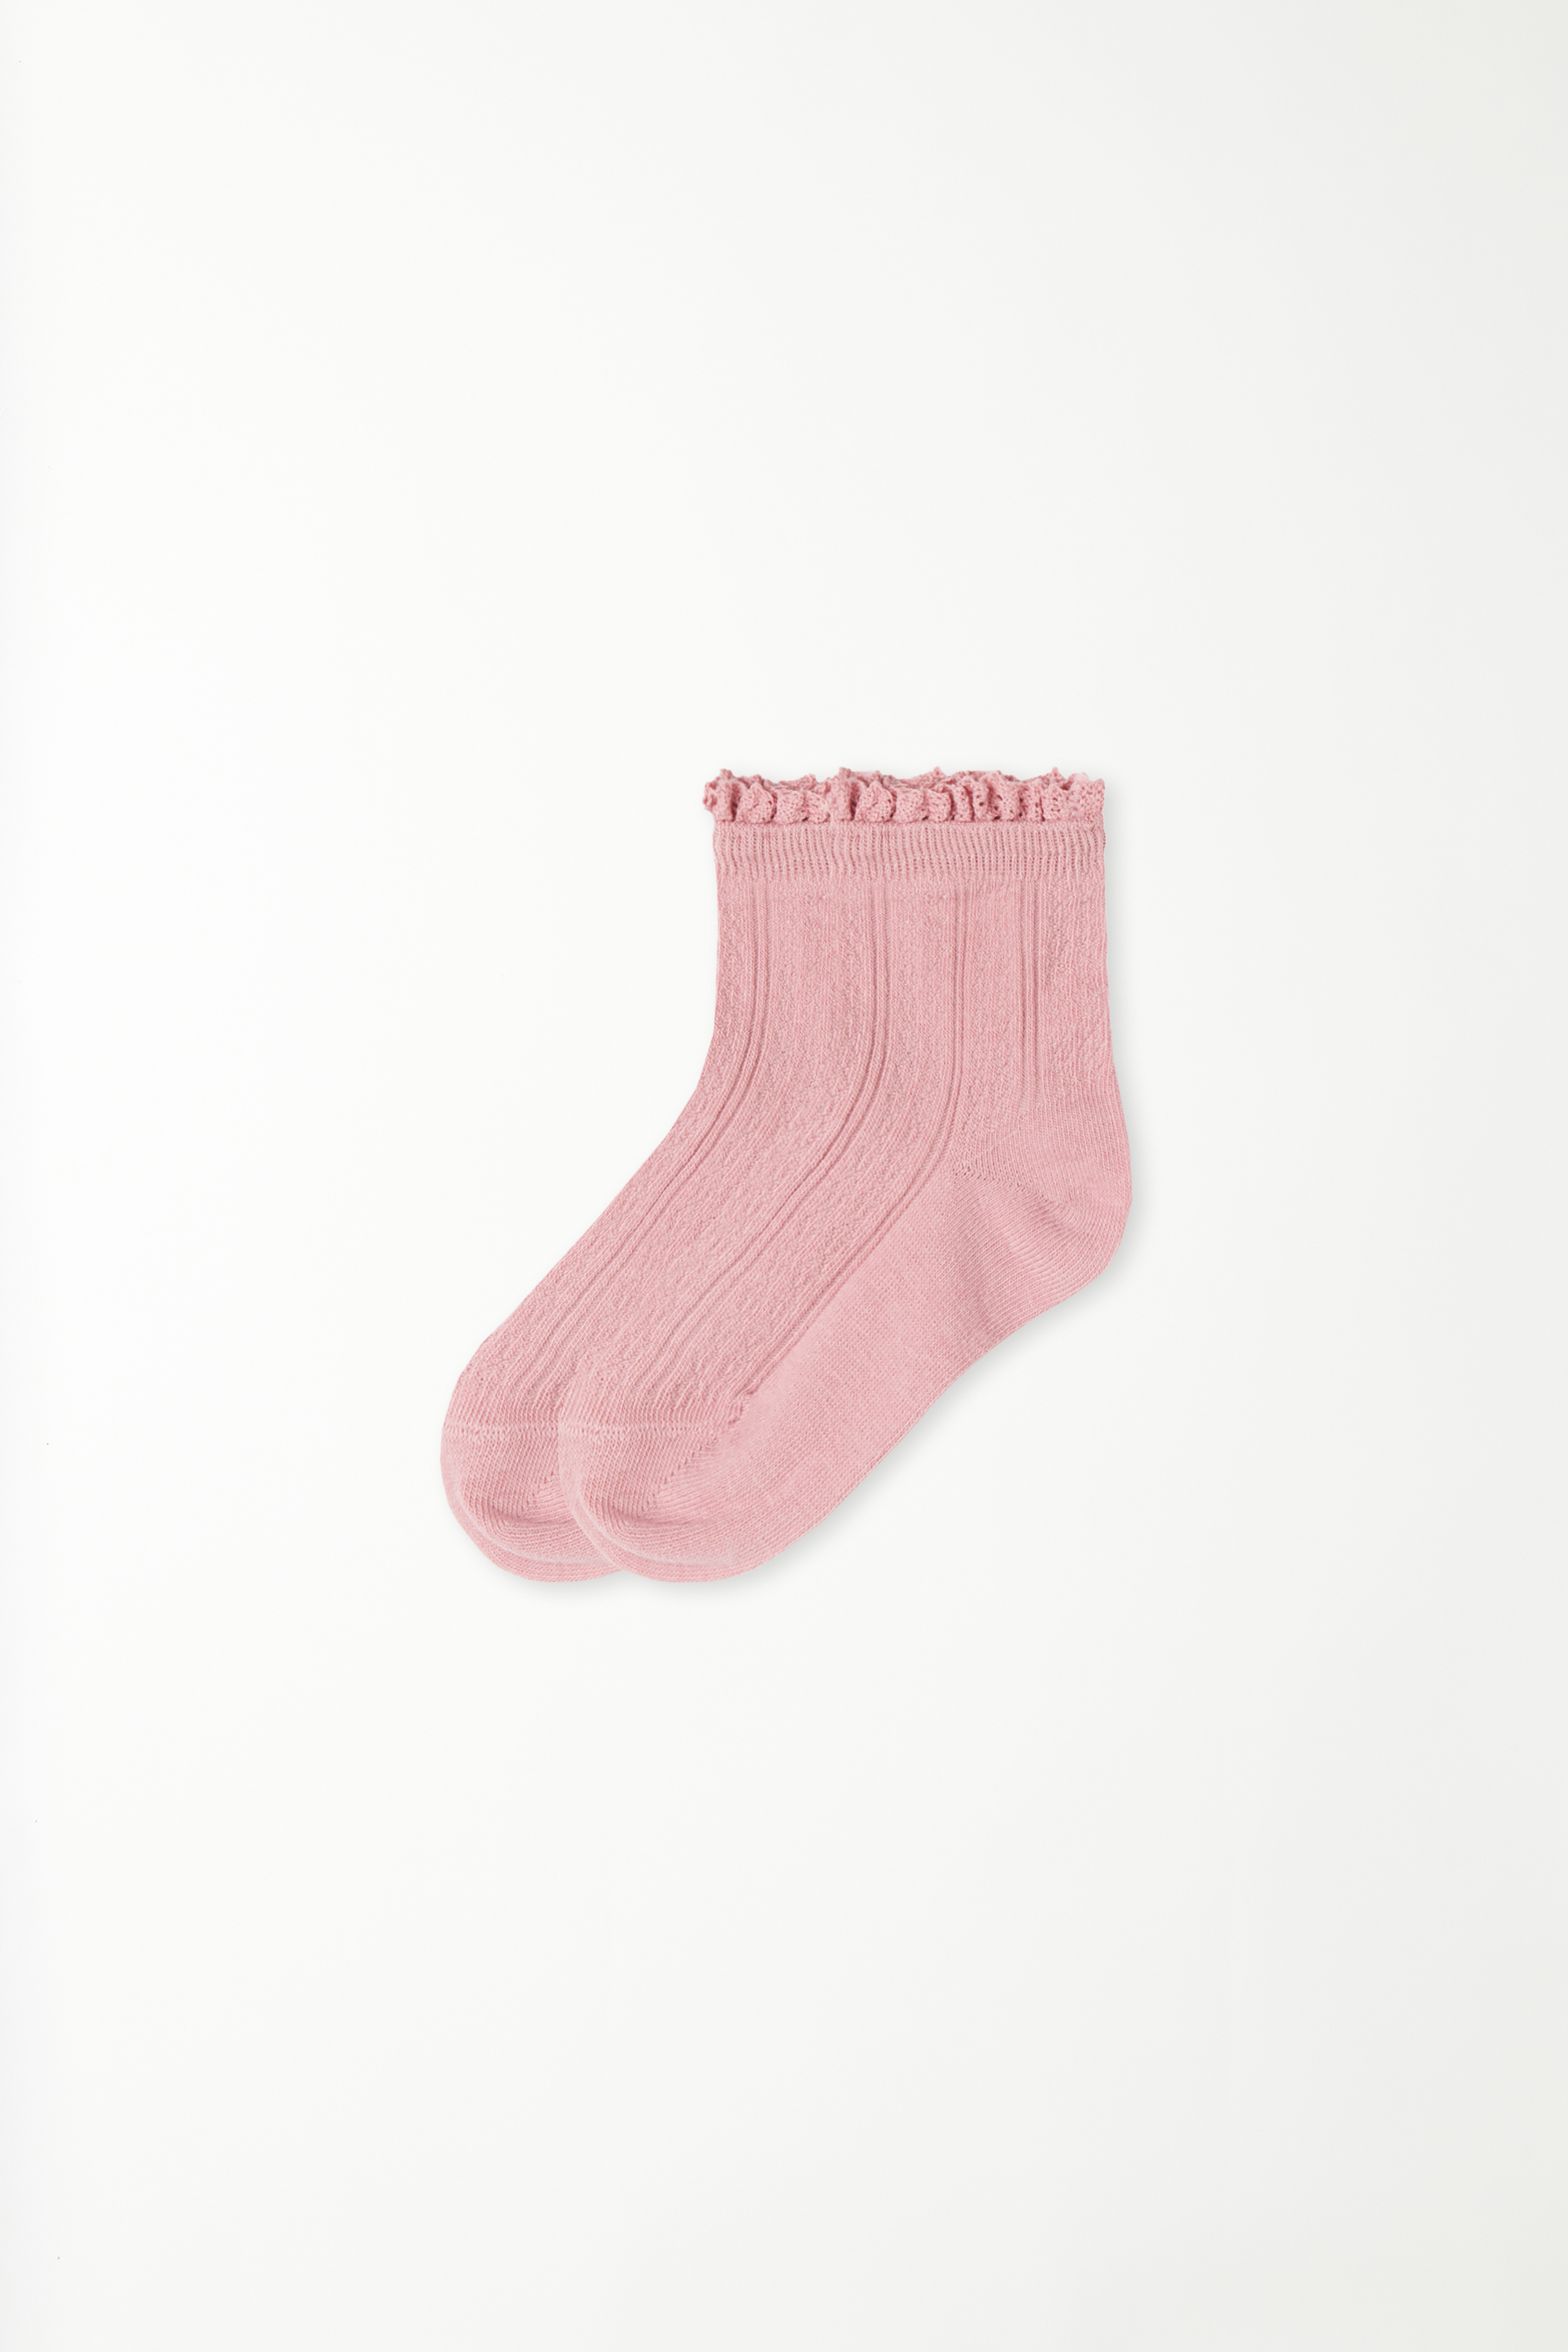 Socken für Mädchen mit Rüschen